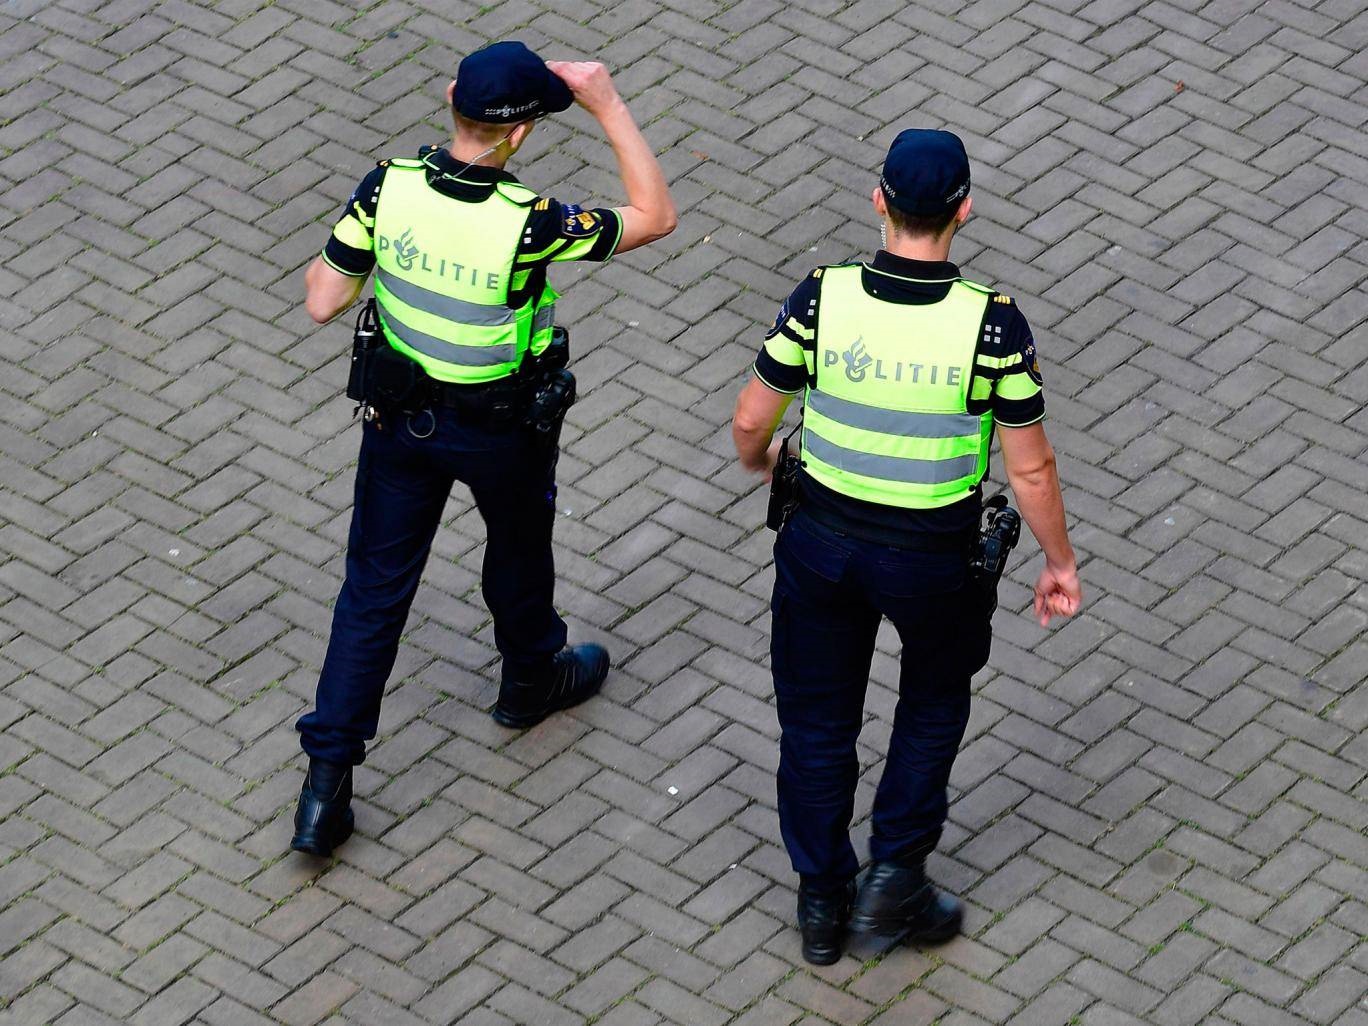 تصاویر | حمله با چاقو در جنوب هلند | دستکم ۲ نفر کشته شدند